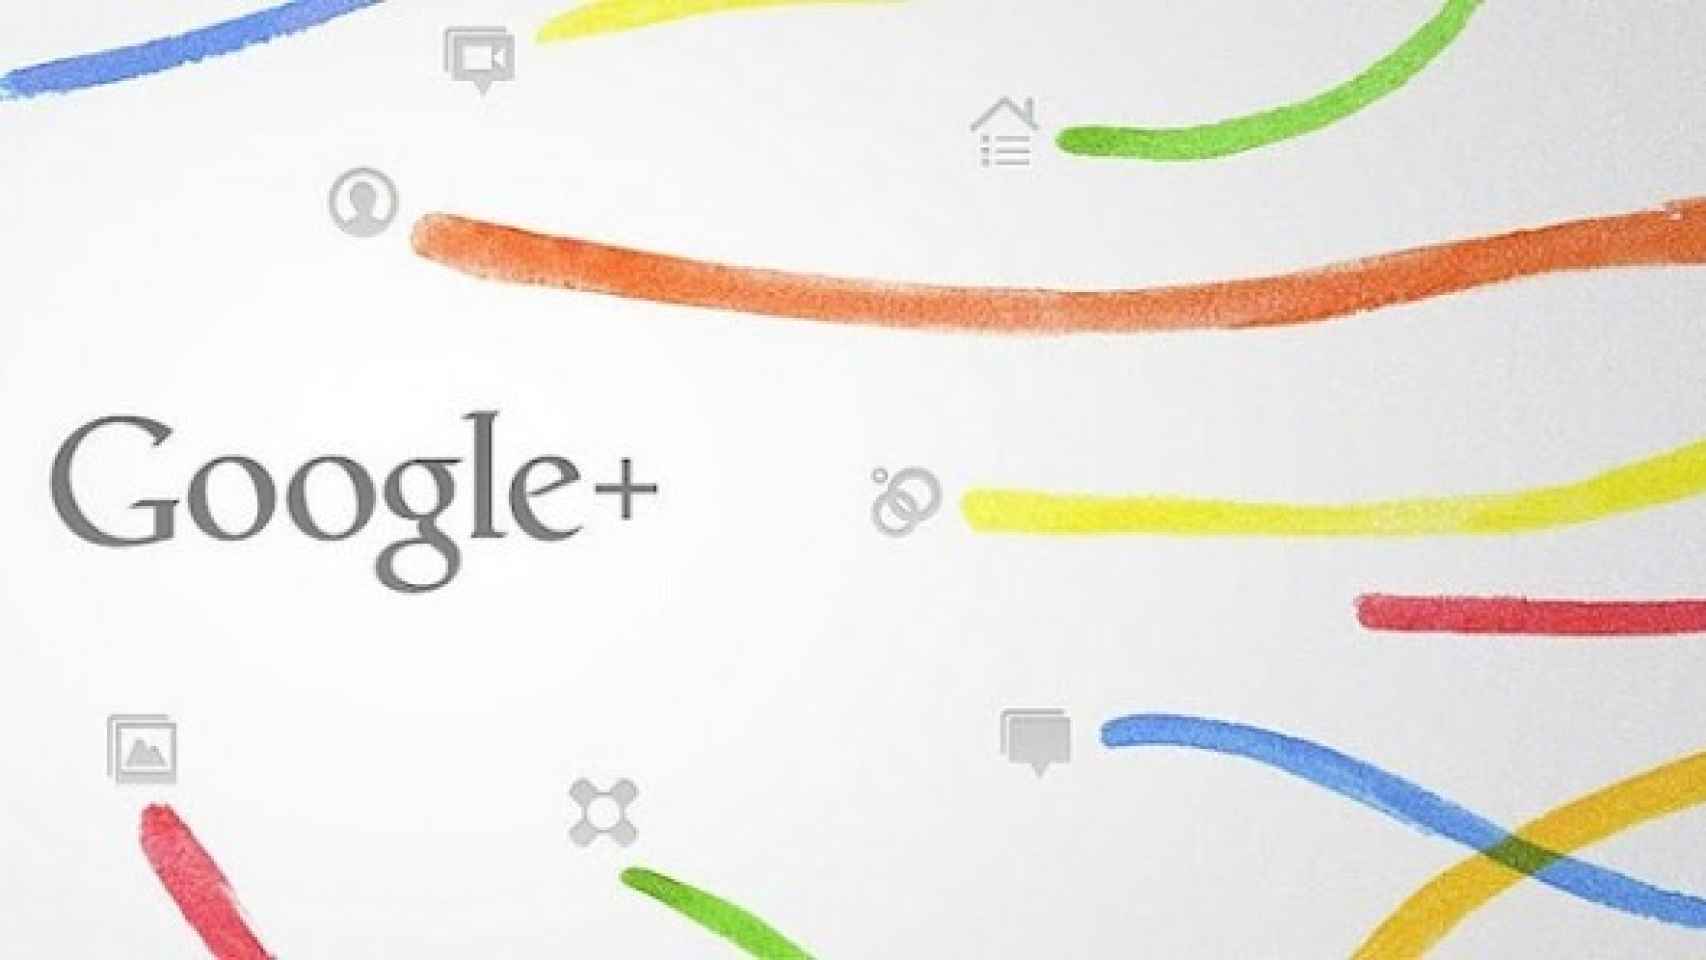 Google + para android se actualiza por completo con un nuevo diseño